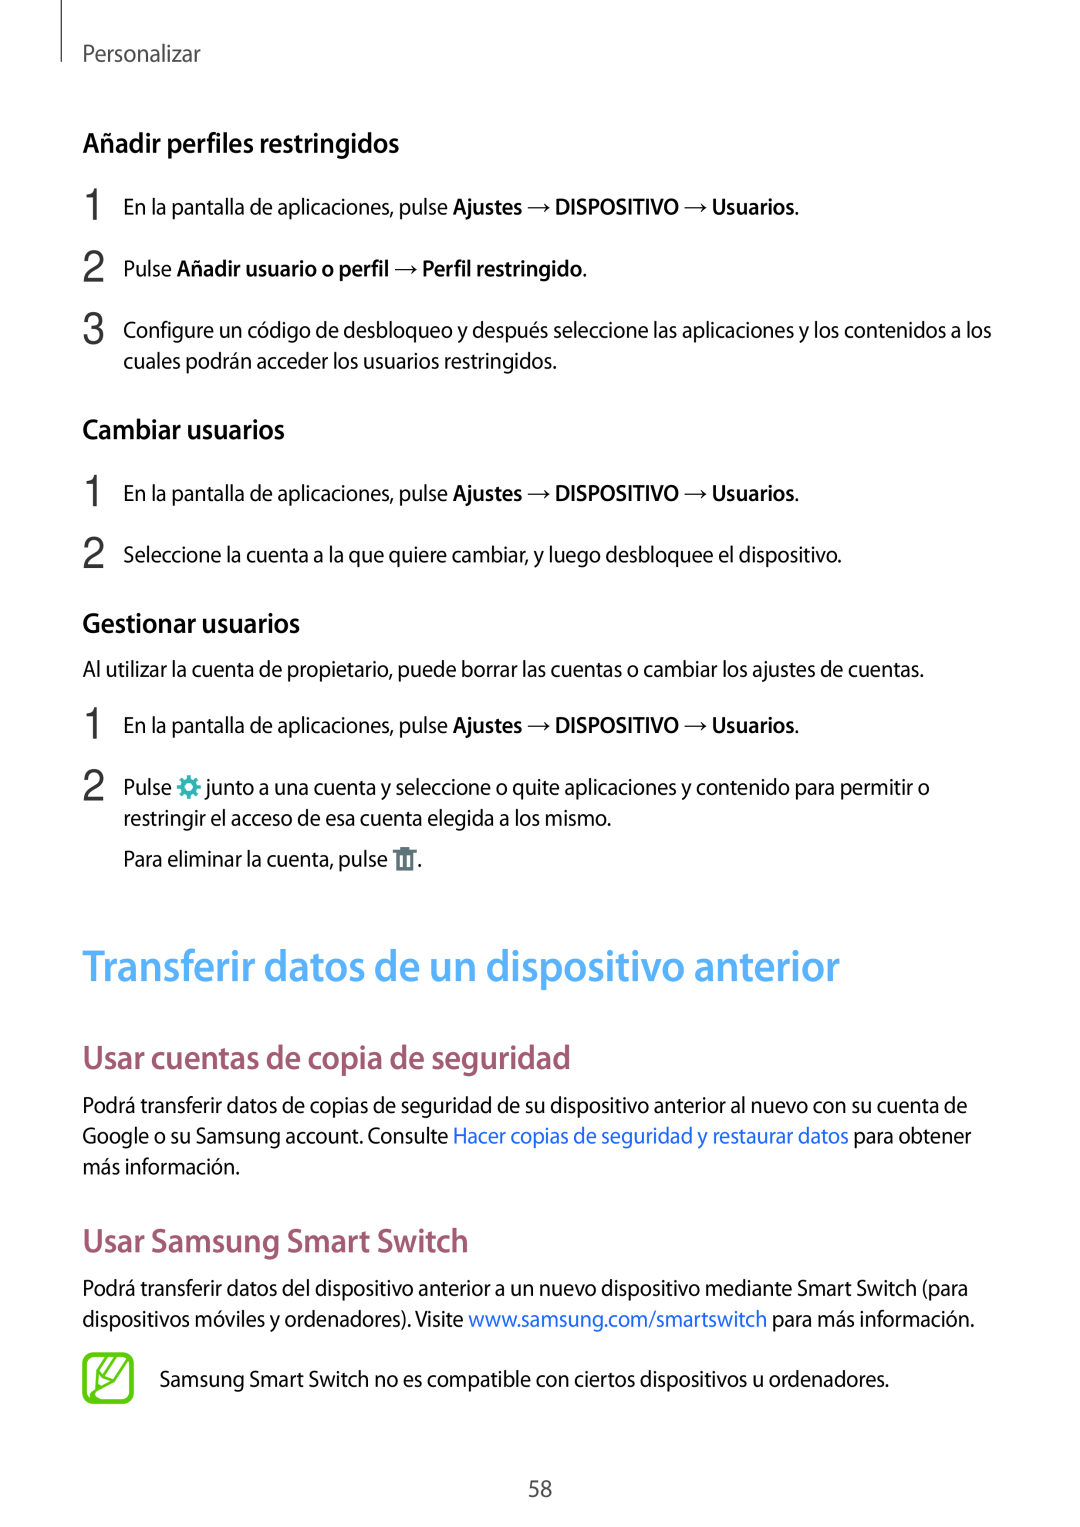 Samsung SM-T700NZWATPH Transferir datos de un dispositivo anterior, Usar cuentas de copia de seguridad, Cambiar usuarios 